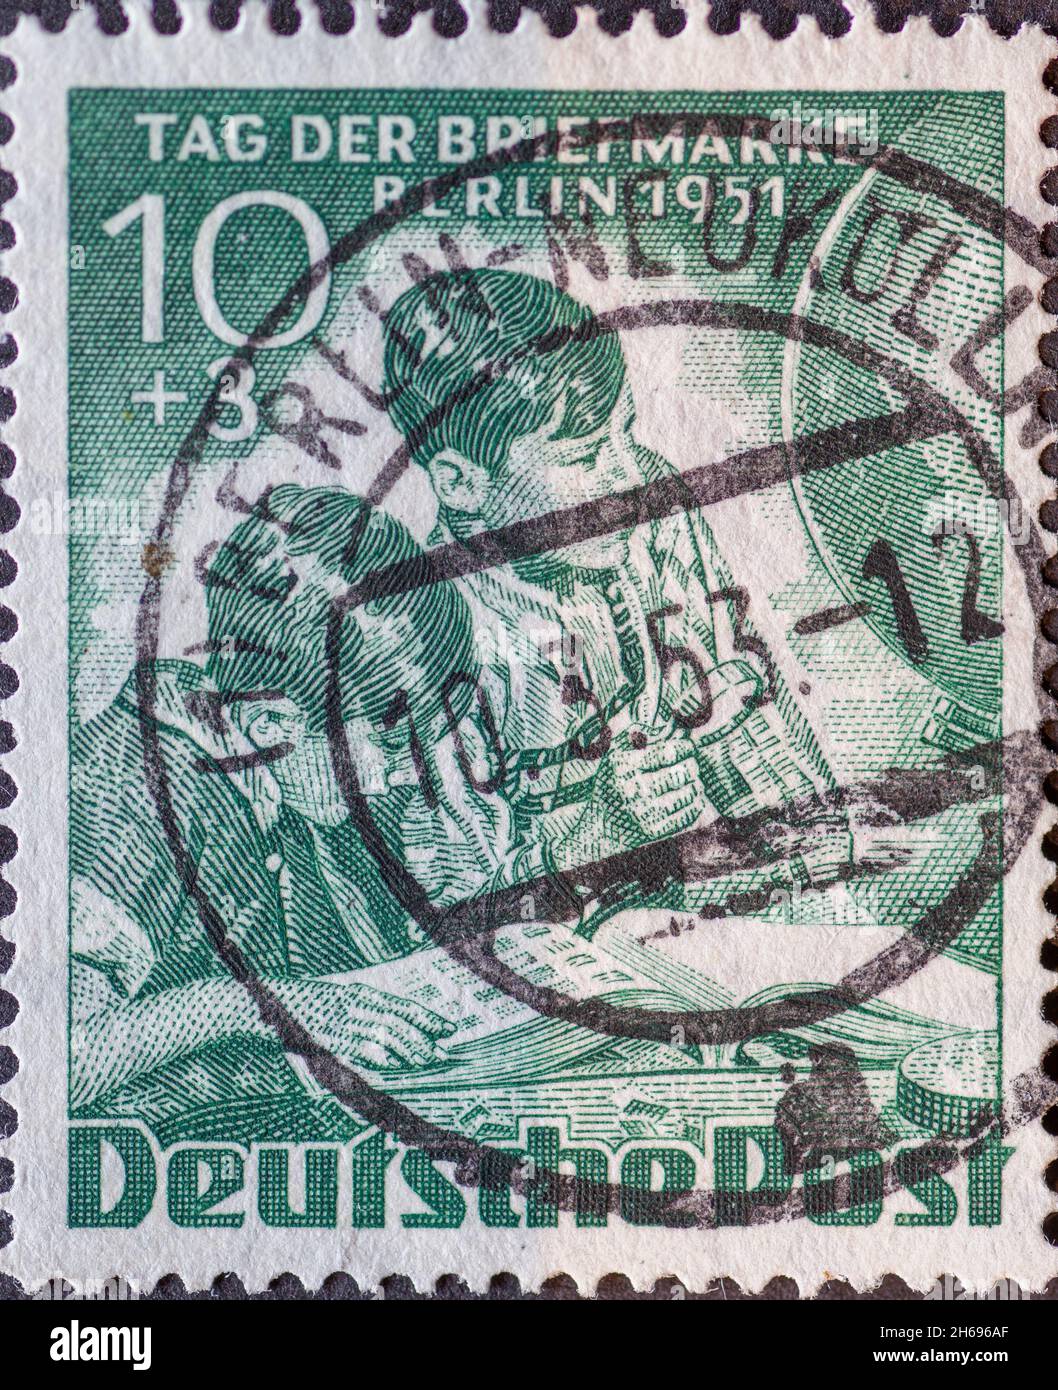 ALLEMAGNE, Berlin - VERS 1951: Timbre-poste de l'Allemagne, Berlin montrant des enfants avec loupe devant l'album de timbre et le monde entier.Colonne Banque D'Images